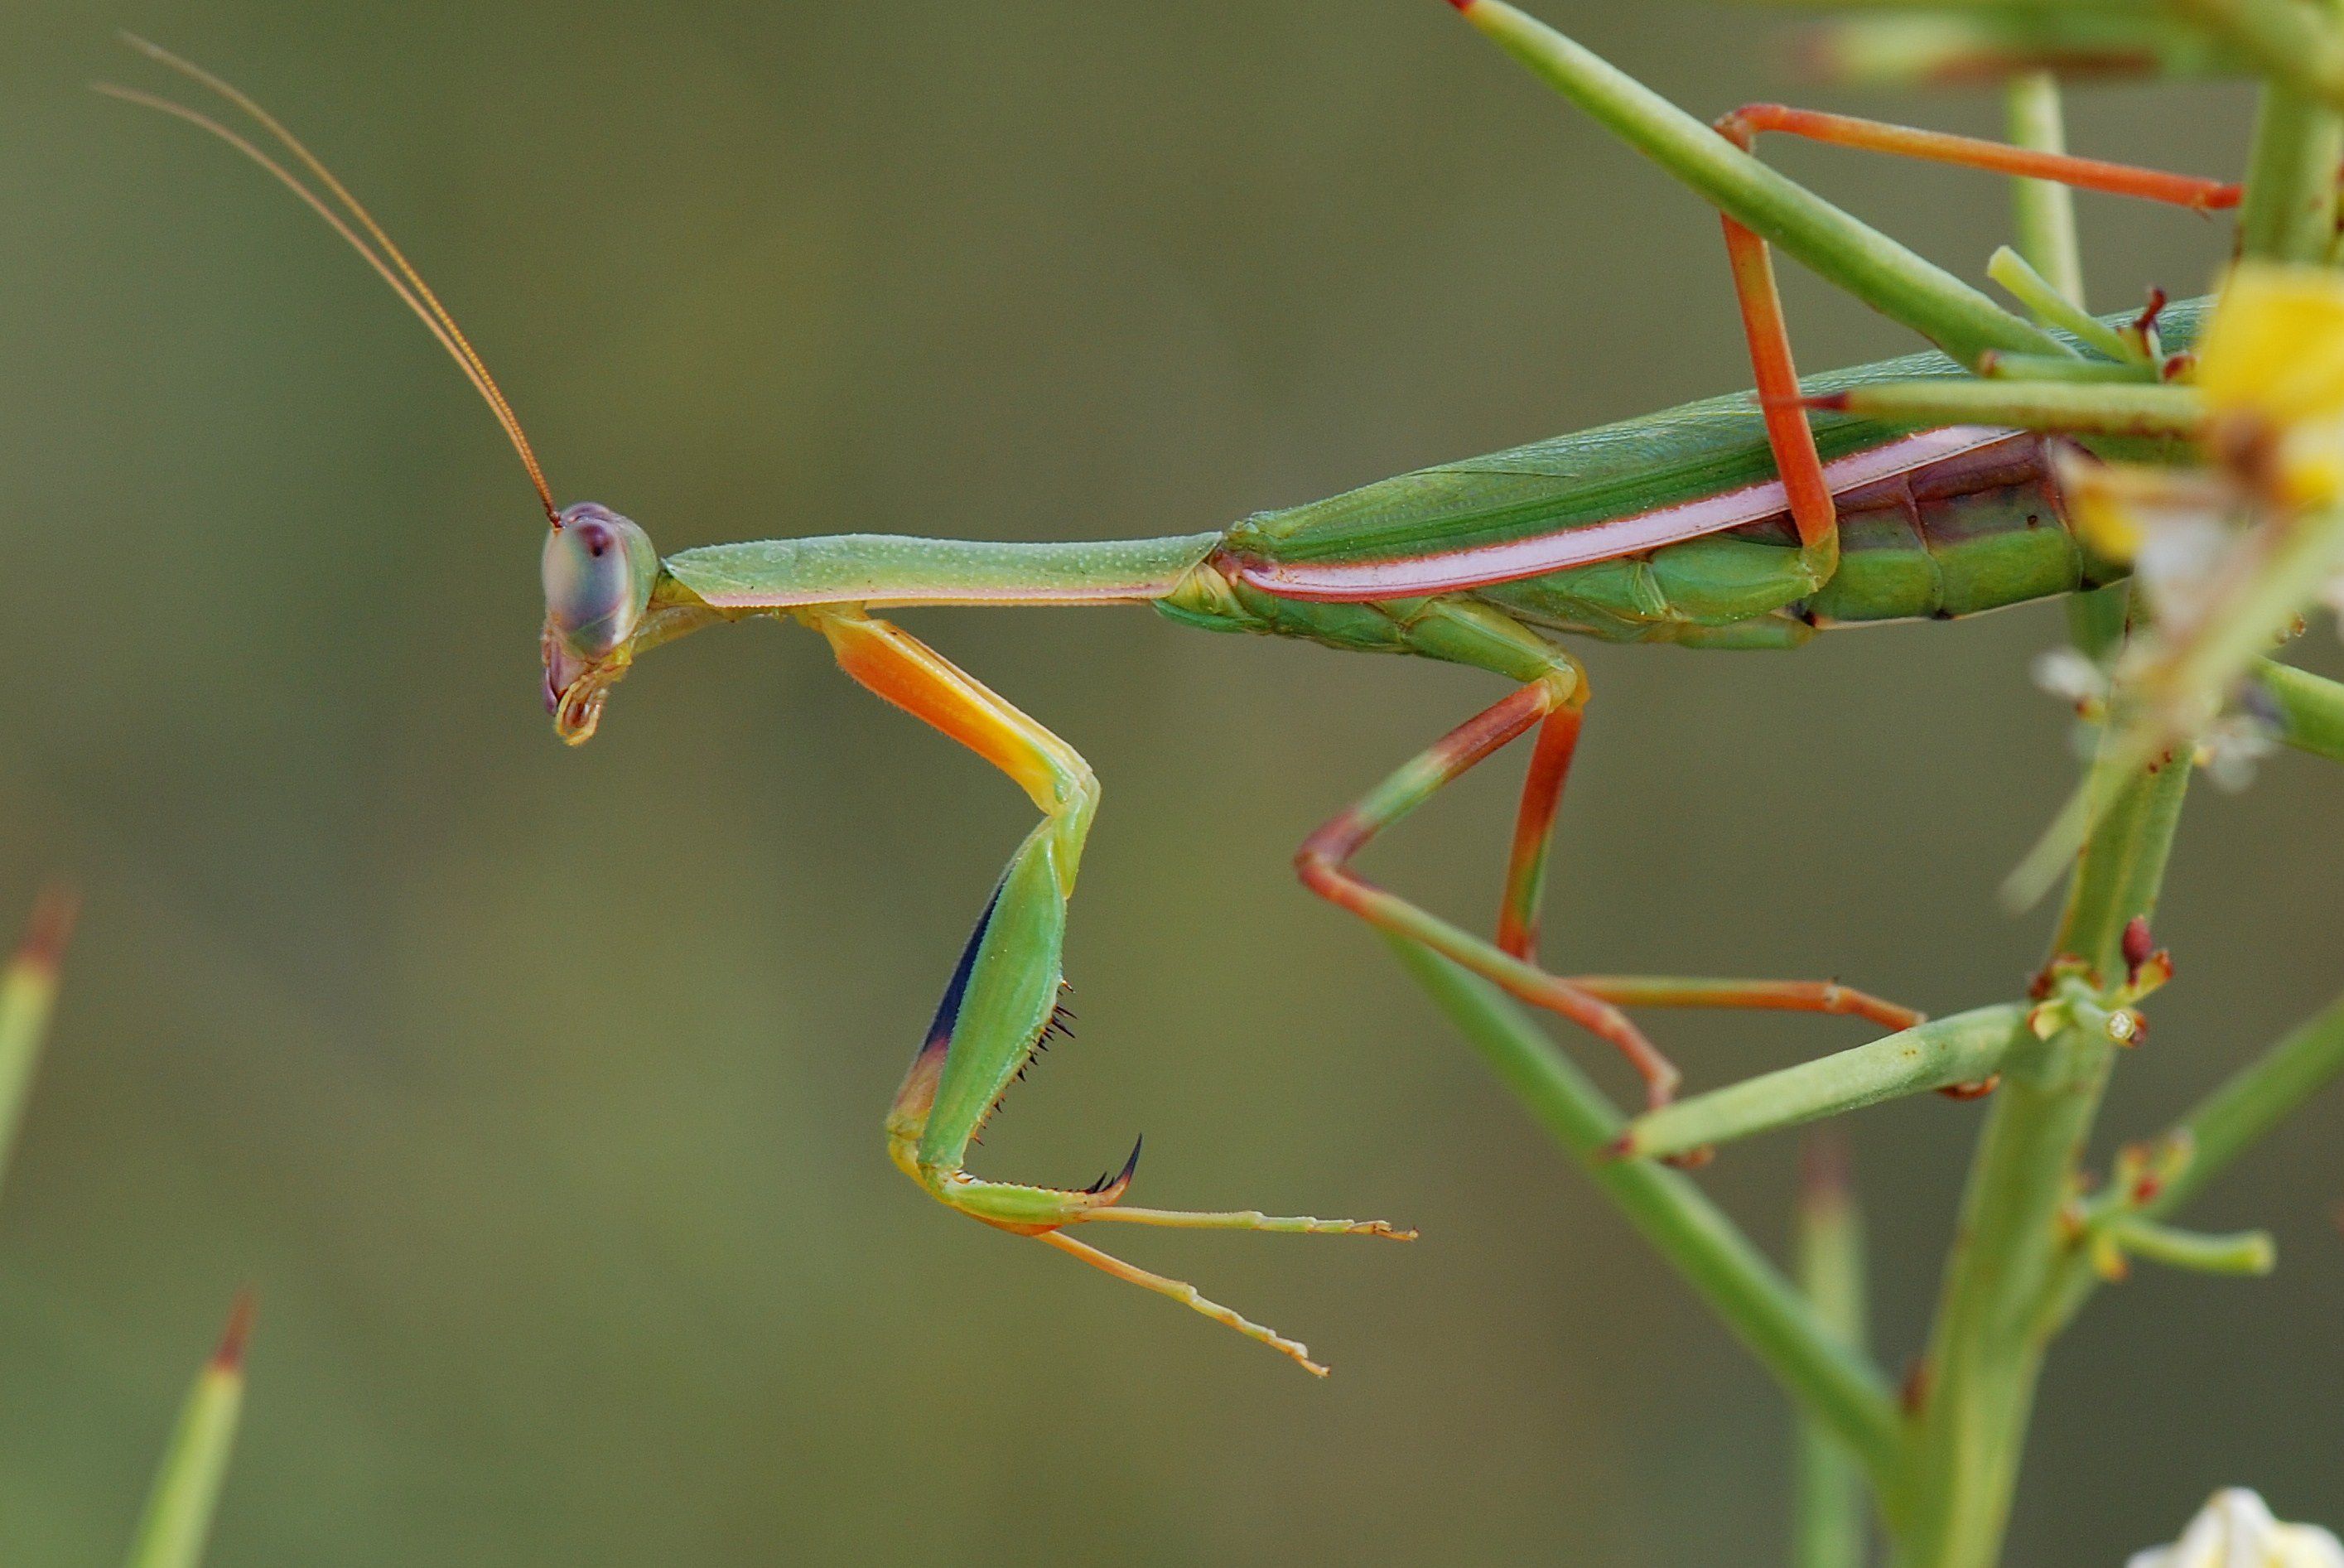 نمای هنری از حشره Mantis در حال حرکت روی شاخه ها